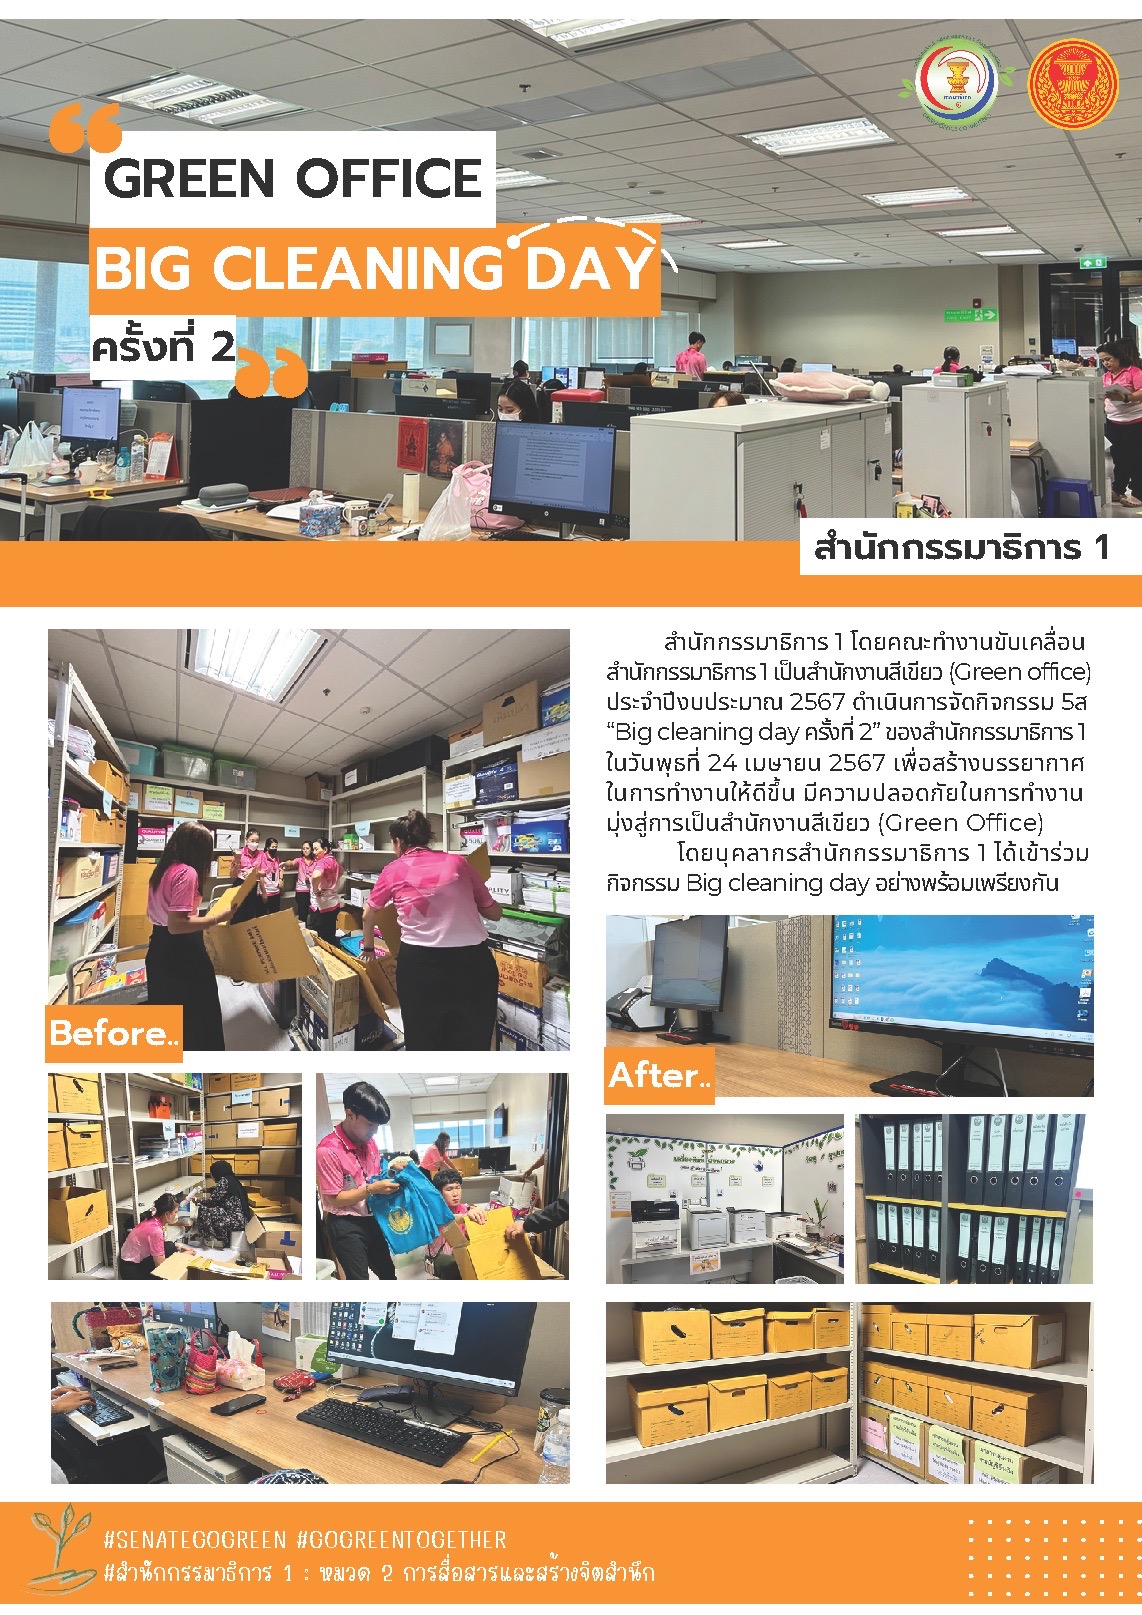 กิจกรรม 5ส “Big cleaning day ครั้งที่ 2” ของสำนักกรรมาธิการ 1 ในวันพุธที่ 24 เมษายน 2567